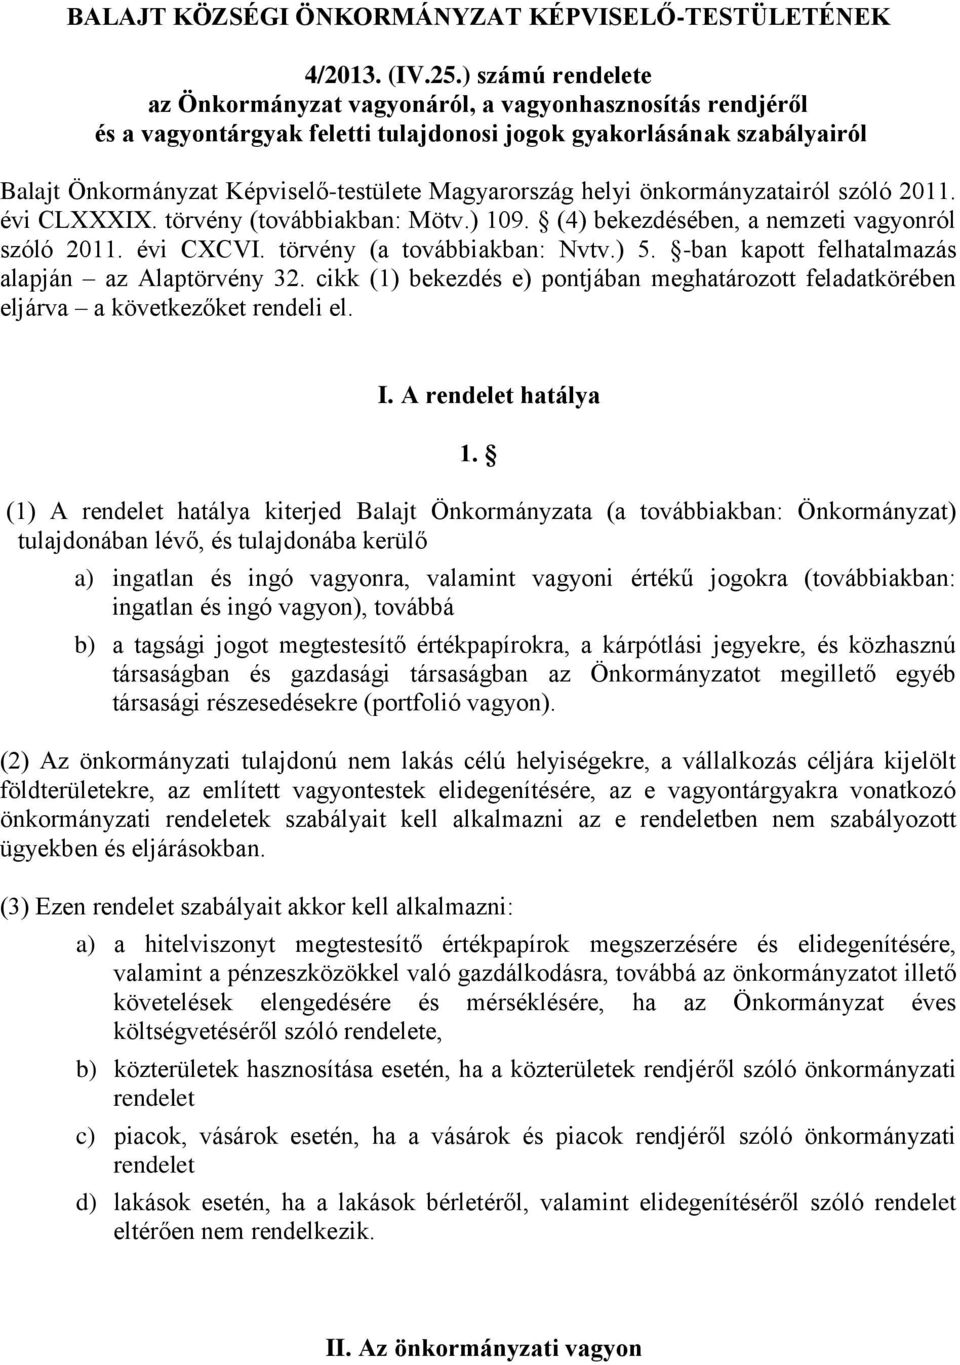 Magyarország helyi önkormányzatairól szóló 2011. évi CLXXXIX. törvény (továbbiakban: Mötv.) 109. (4) bekezdésében, a nemzeti vagyonról szóló 2011. évi CXCVI. törvény (a továbbiakban: Nvtv.) 5.